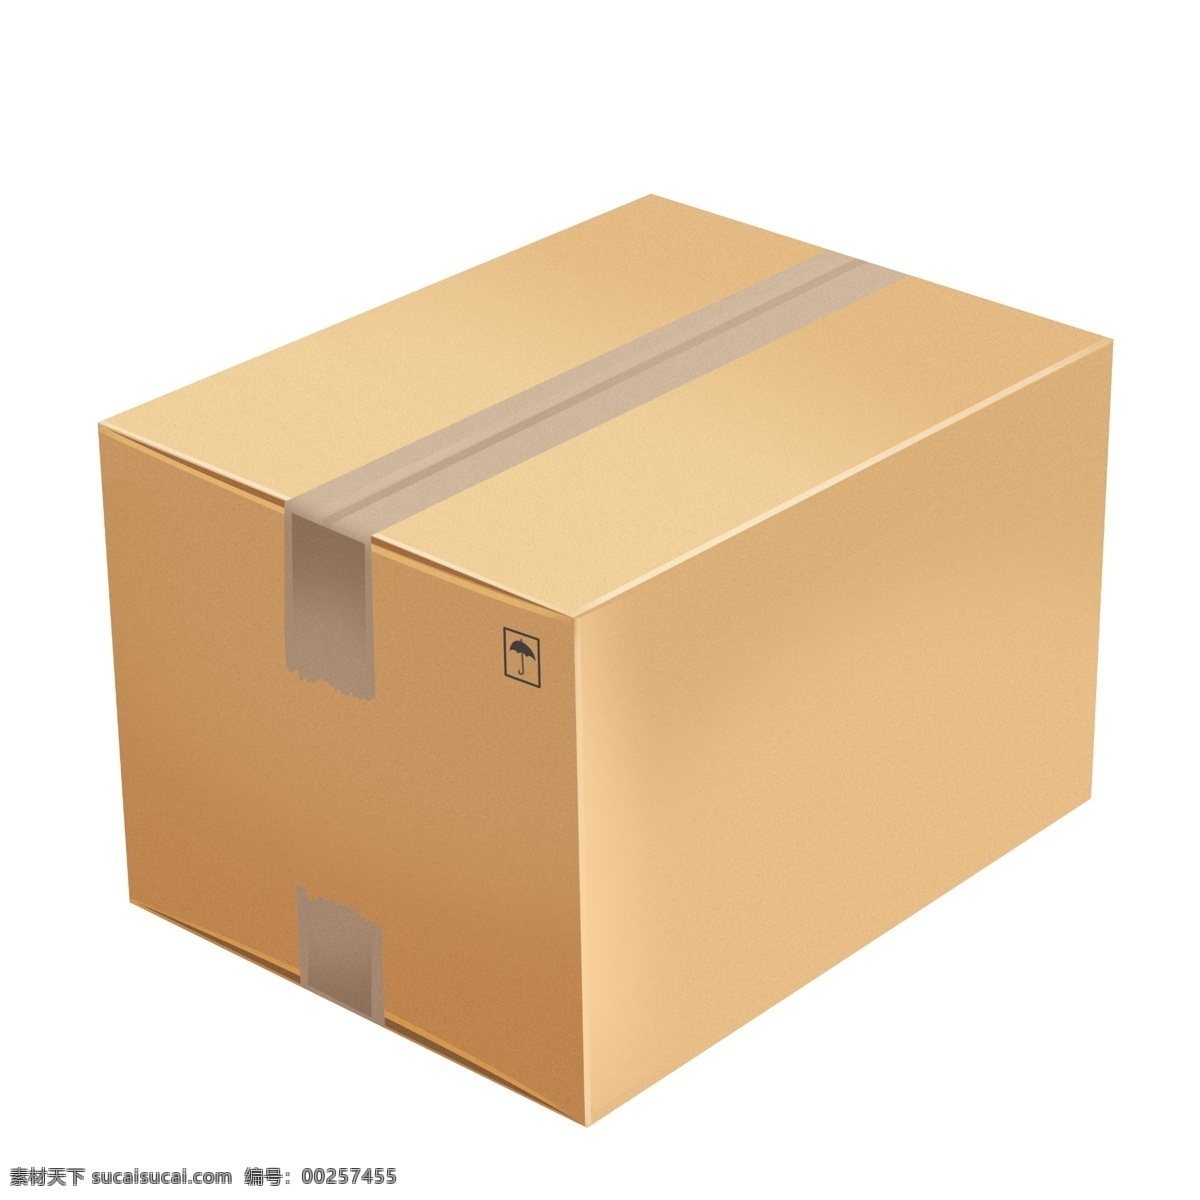 长方体 创意 包装盒 矢量 卡纸 瓦楞纸 长方体包装盒 空白 盒子 纸盒 软件包装 模板 玩楞纸箱 垃圾桶 运输 标识 小心轻放 环保